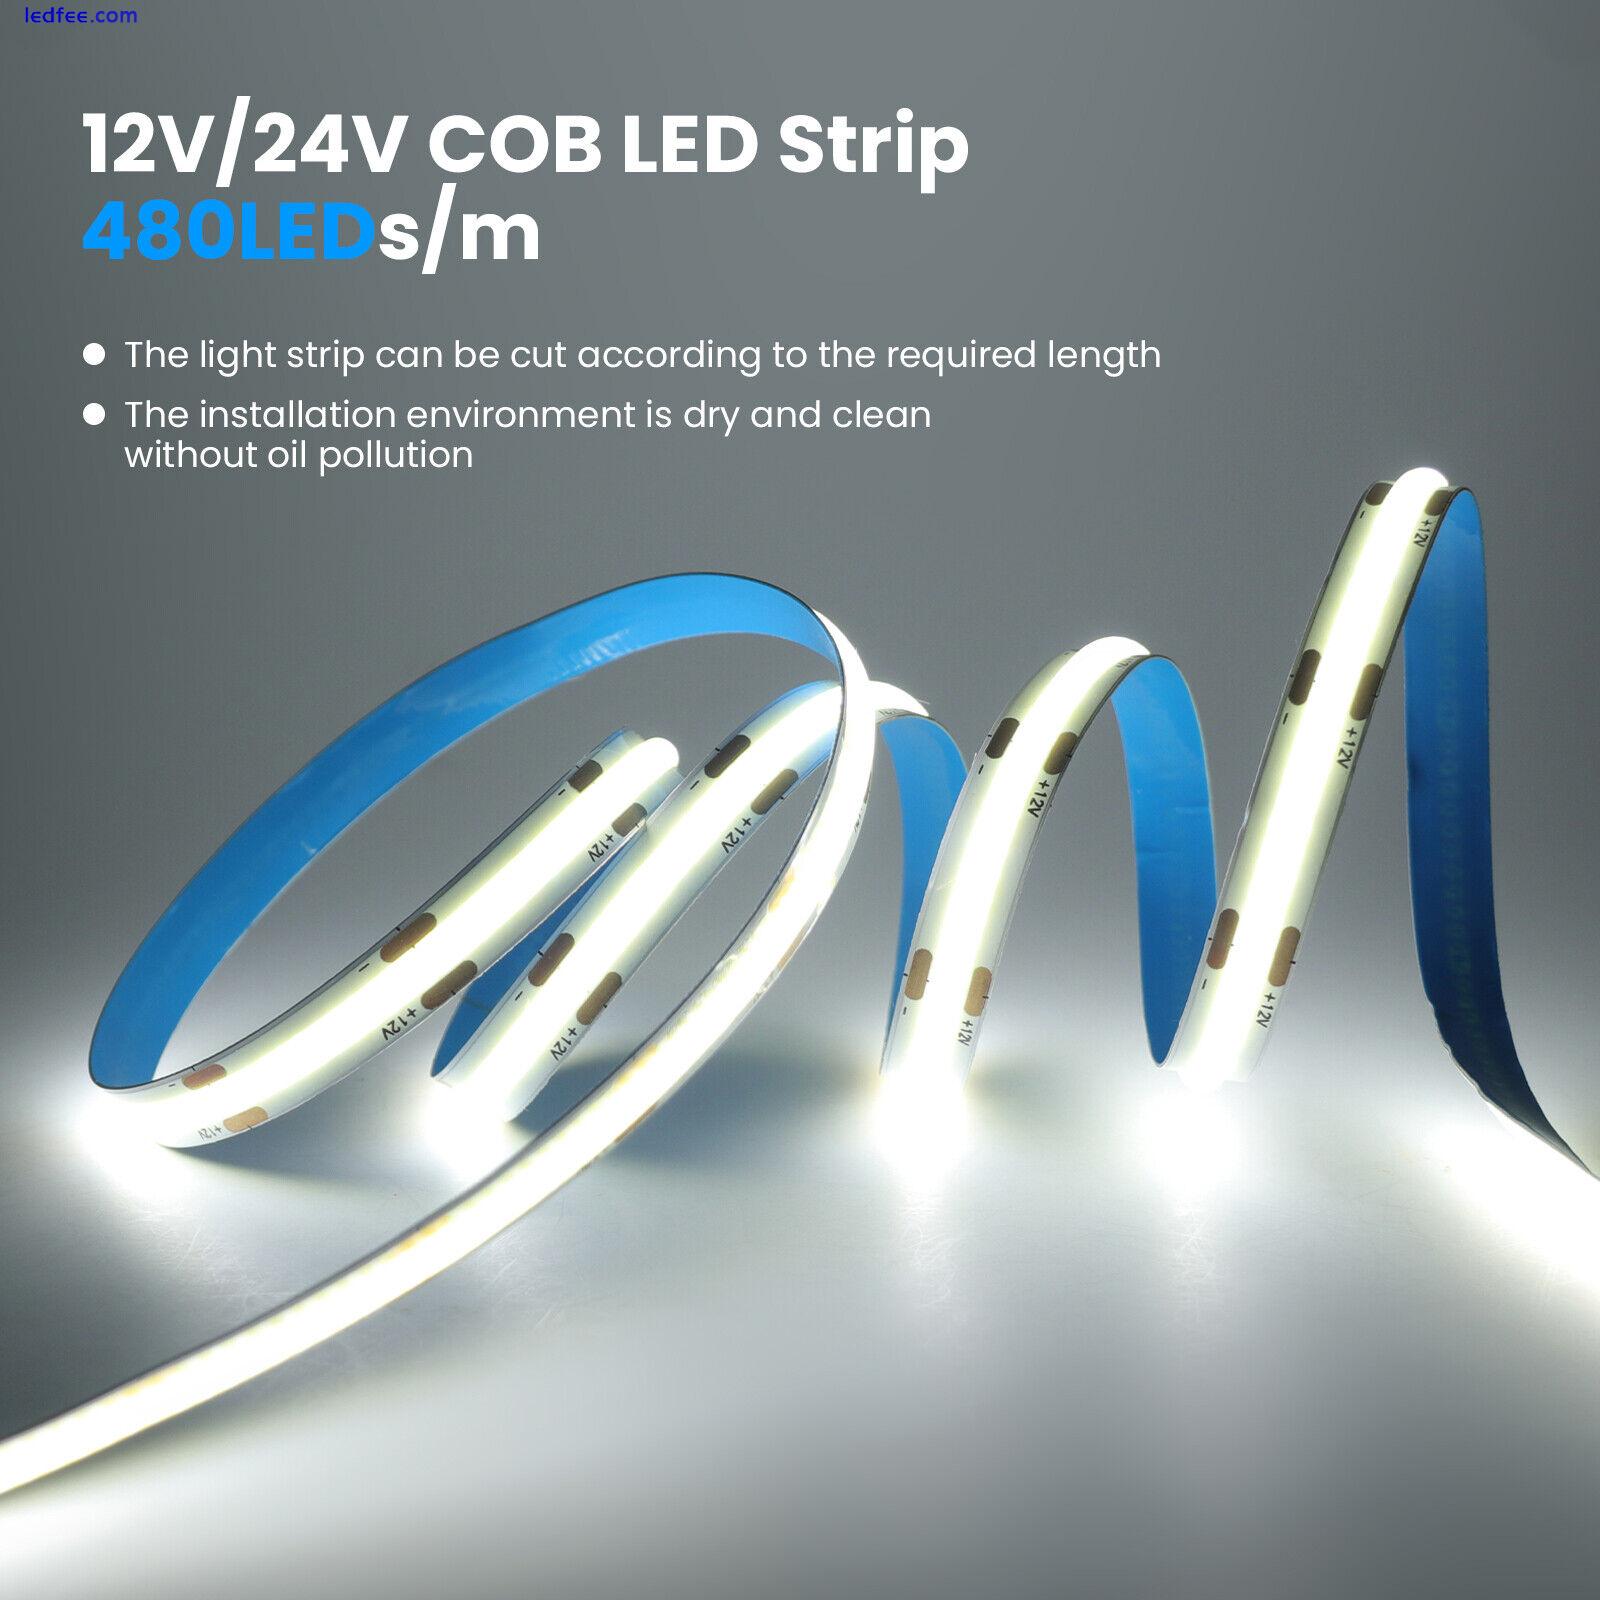 24V High Density COB LED Strip Lights Flexible Tape Rope Cabinet Kitchen Light 4 